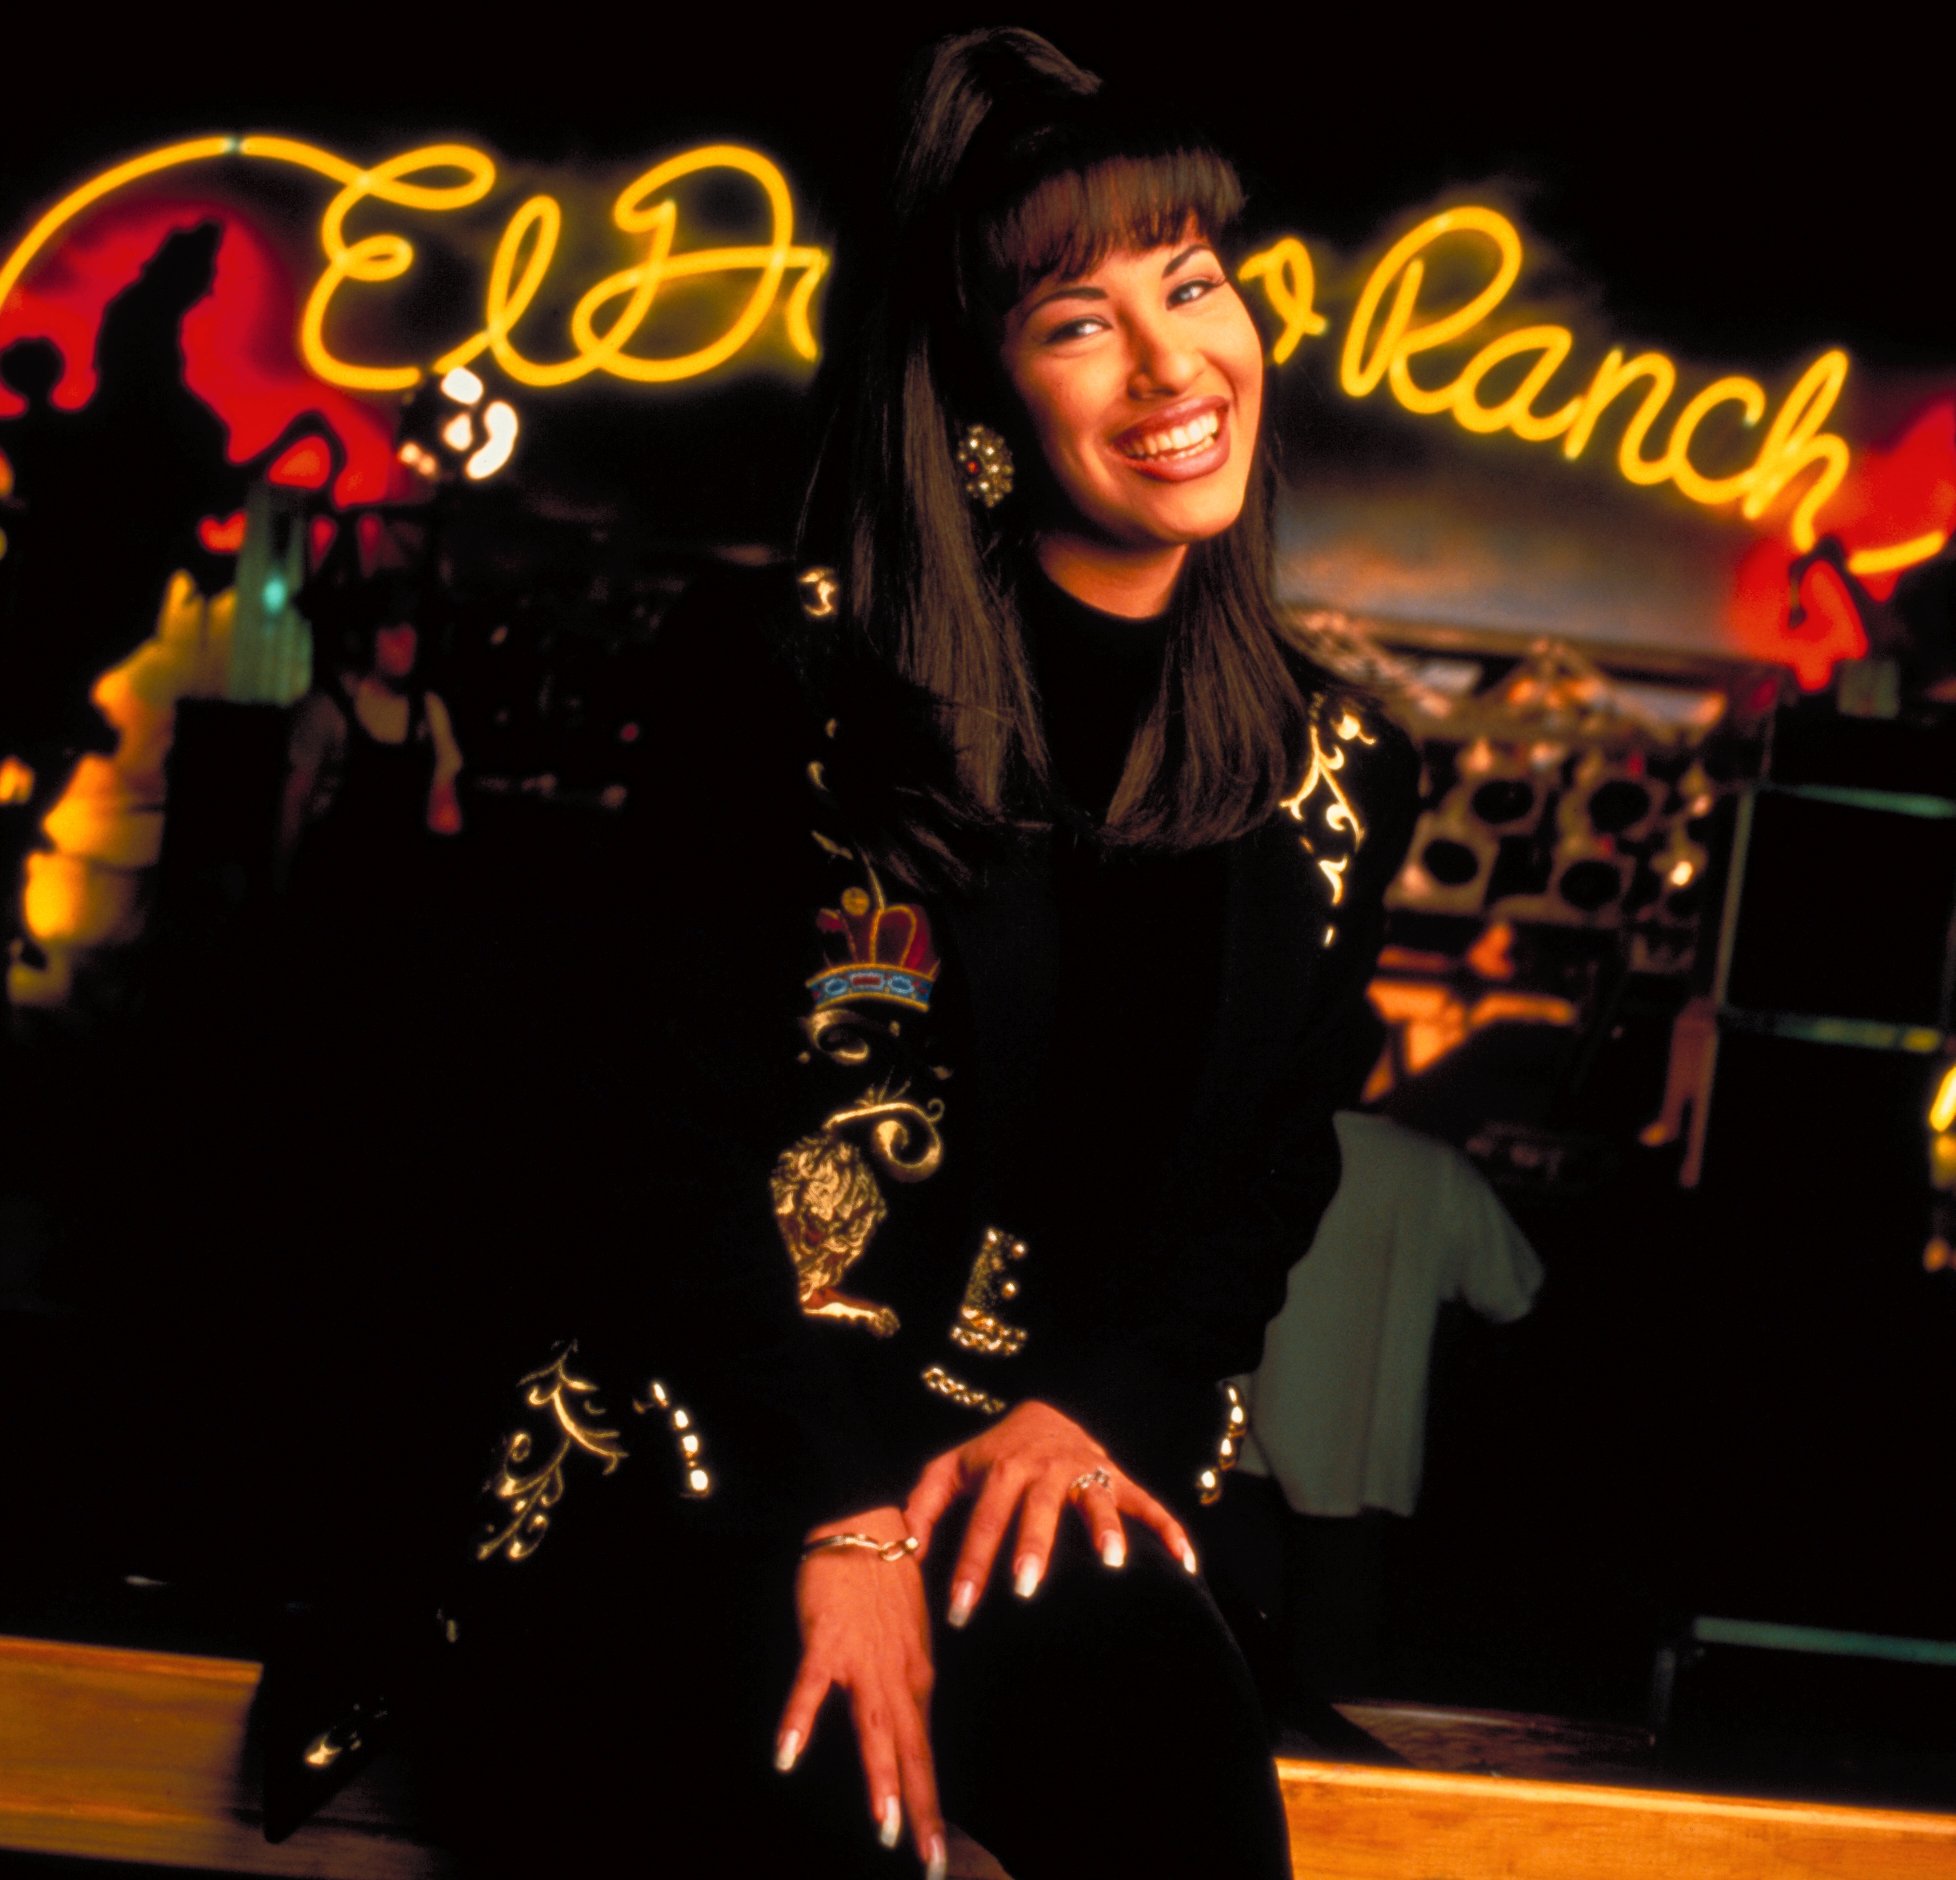 La cantante Selena Quintanilla Pérez dentro del club nocturno. | Foto: Getty Images